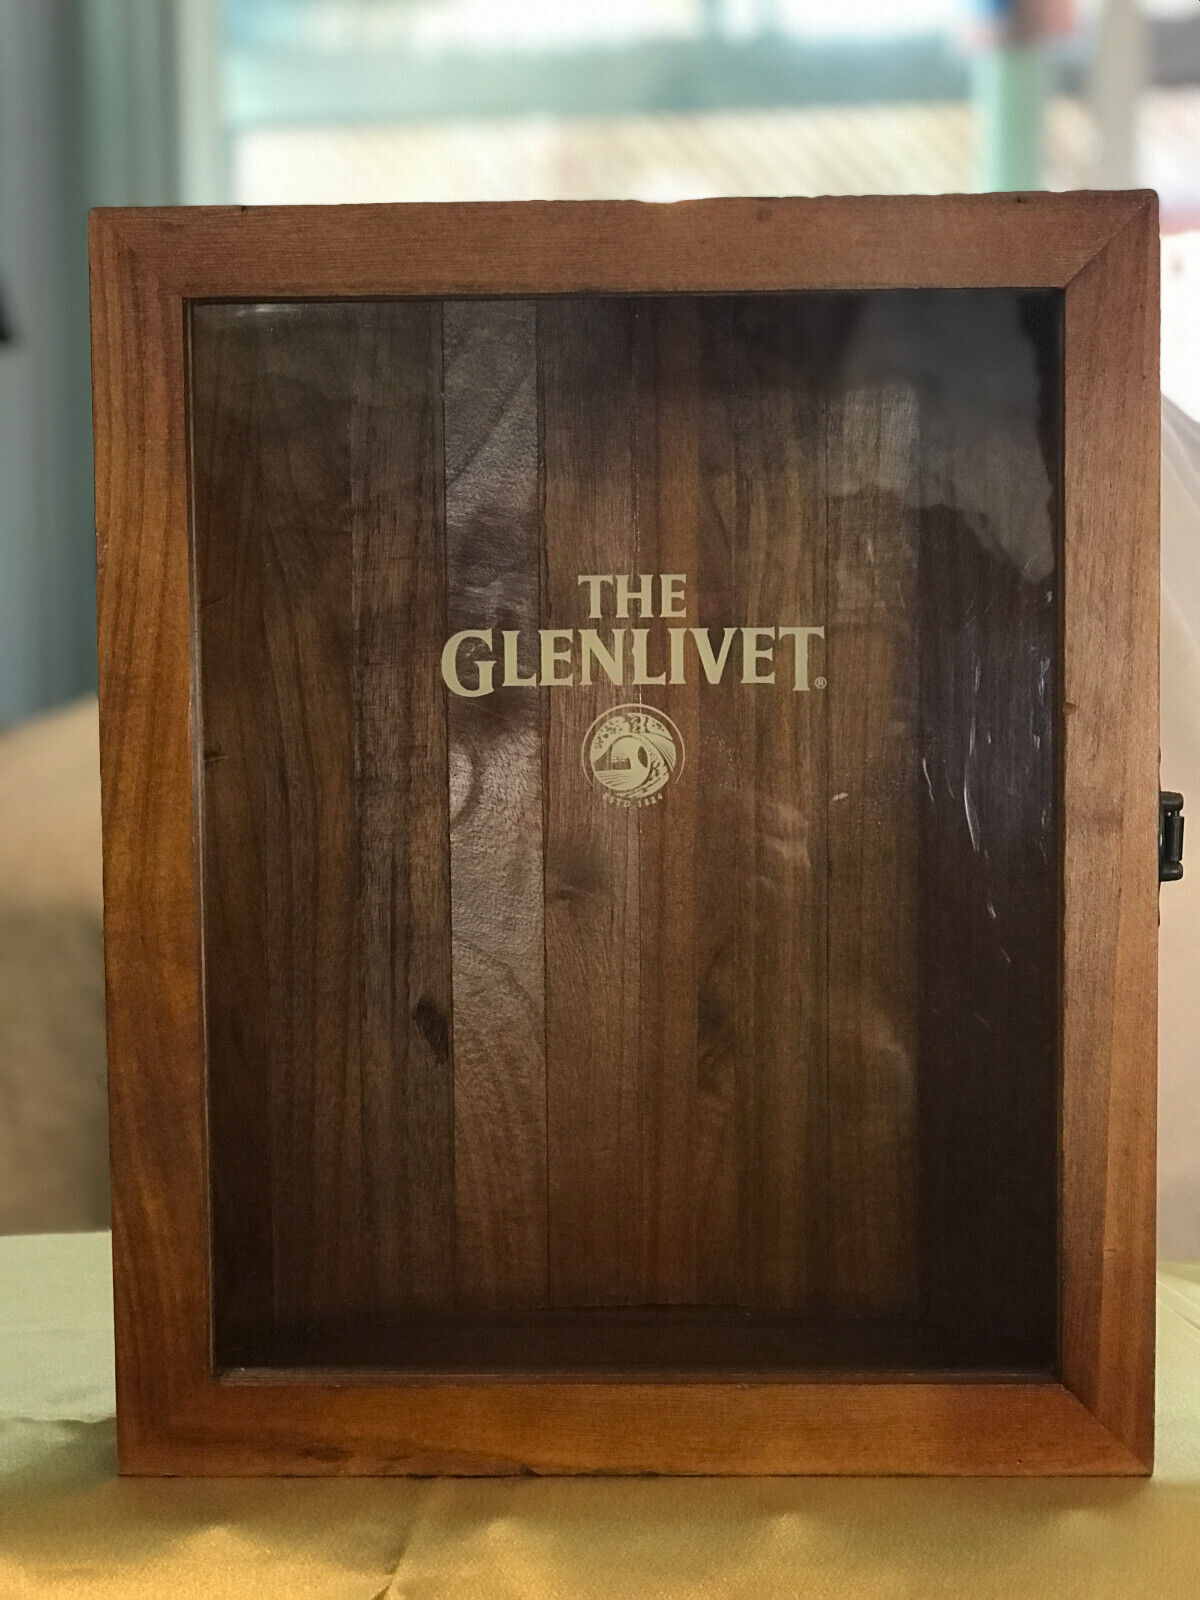 GLENLIVET 3 BOTTLES SHOWCASE DISPLAY BOX BAR MAN CAVE DECOR WOOD & WINDOW VINTAG